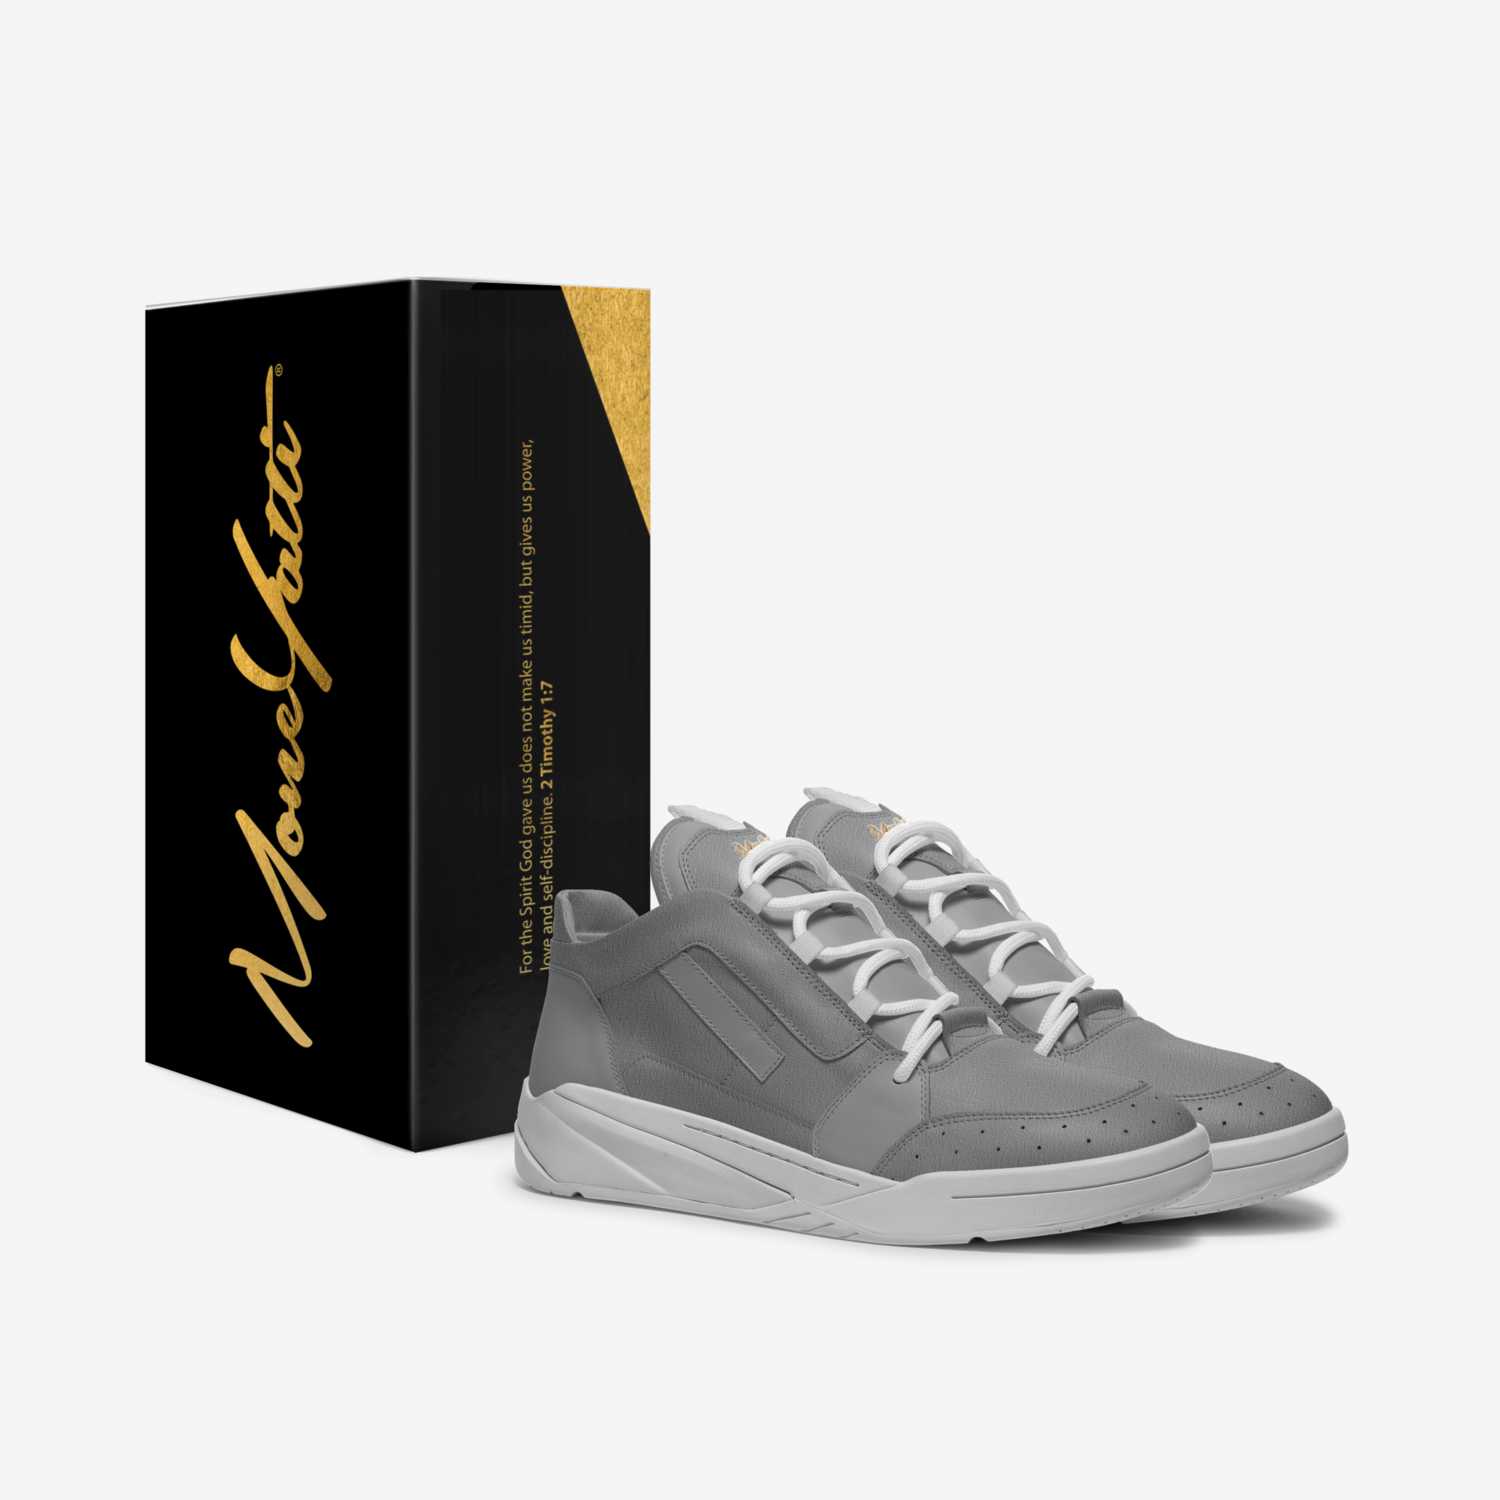 MONEYATTI TURBO 019 custom made in Italy shoes by Moneyatti Brand | Box view